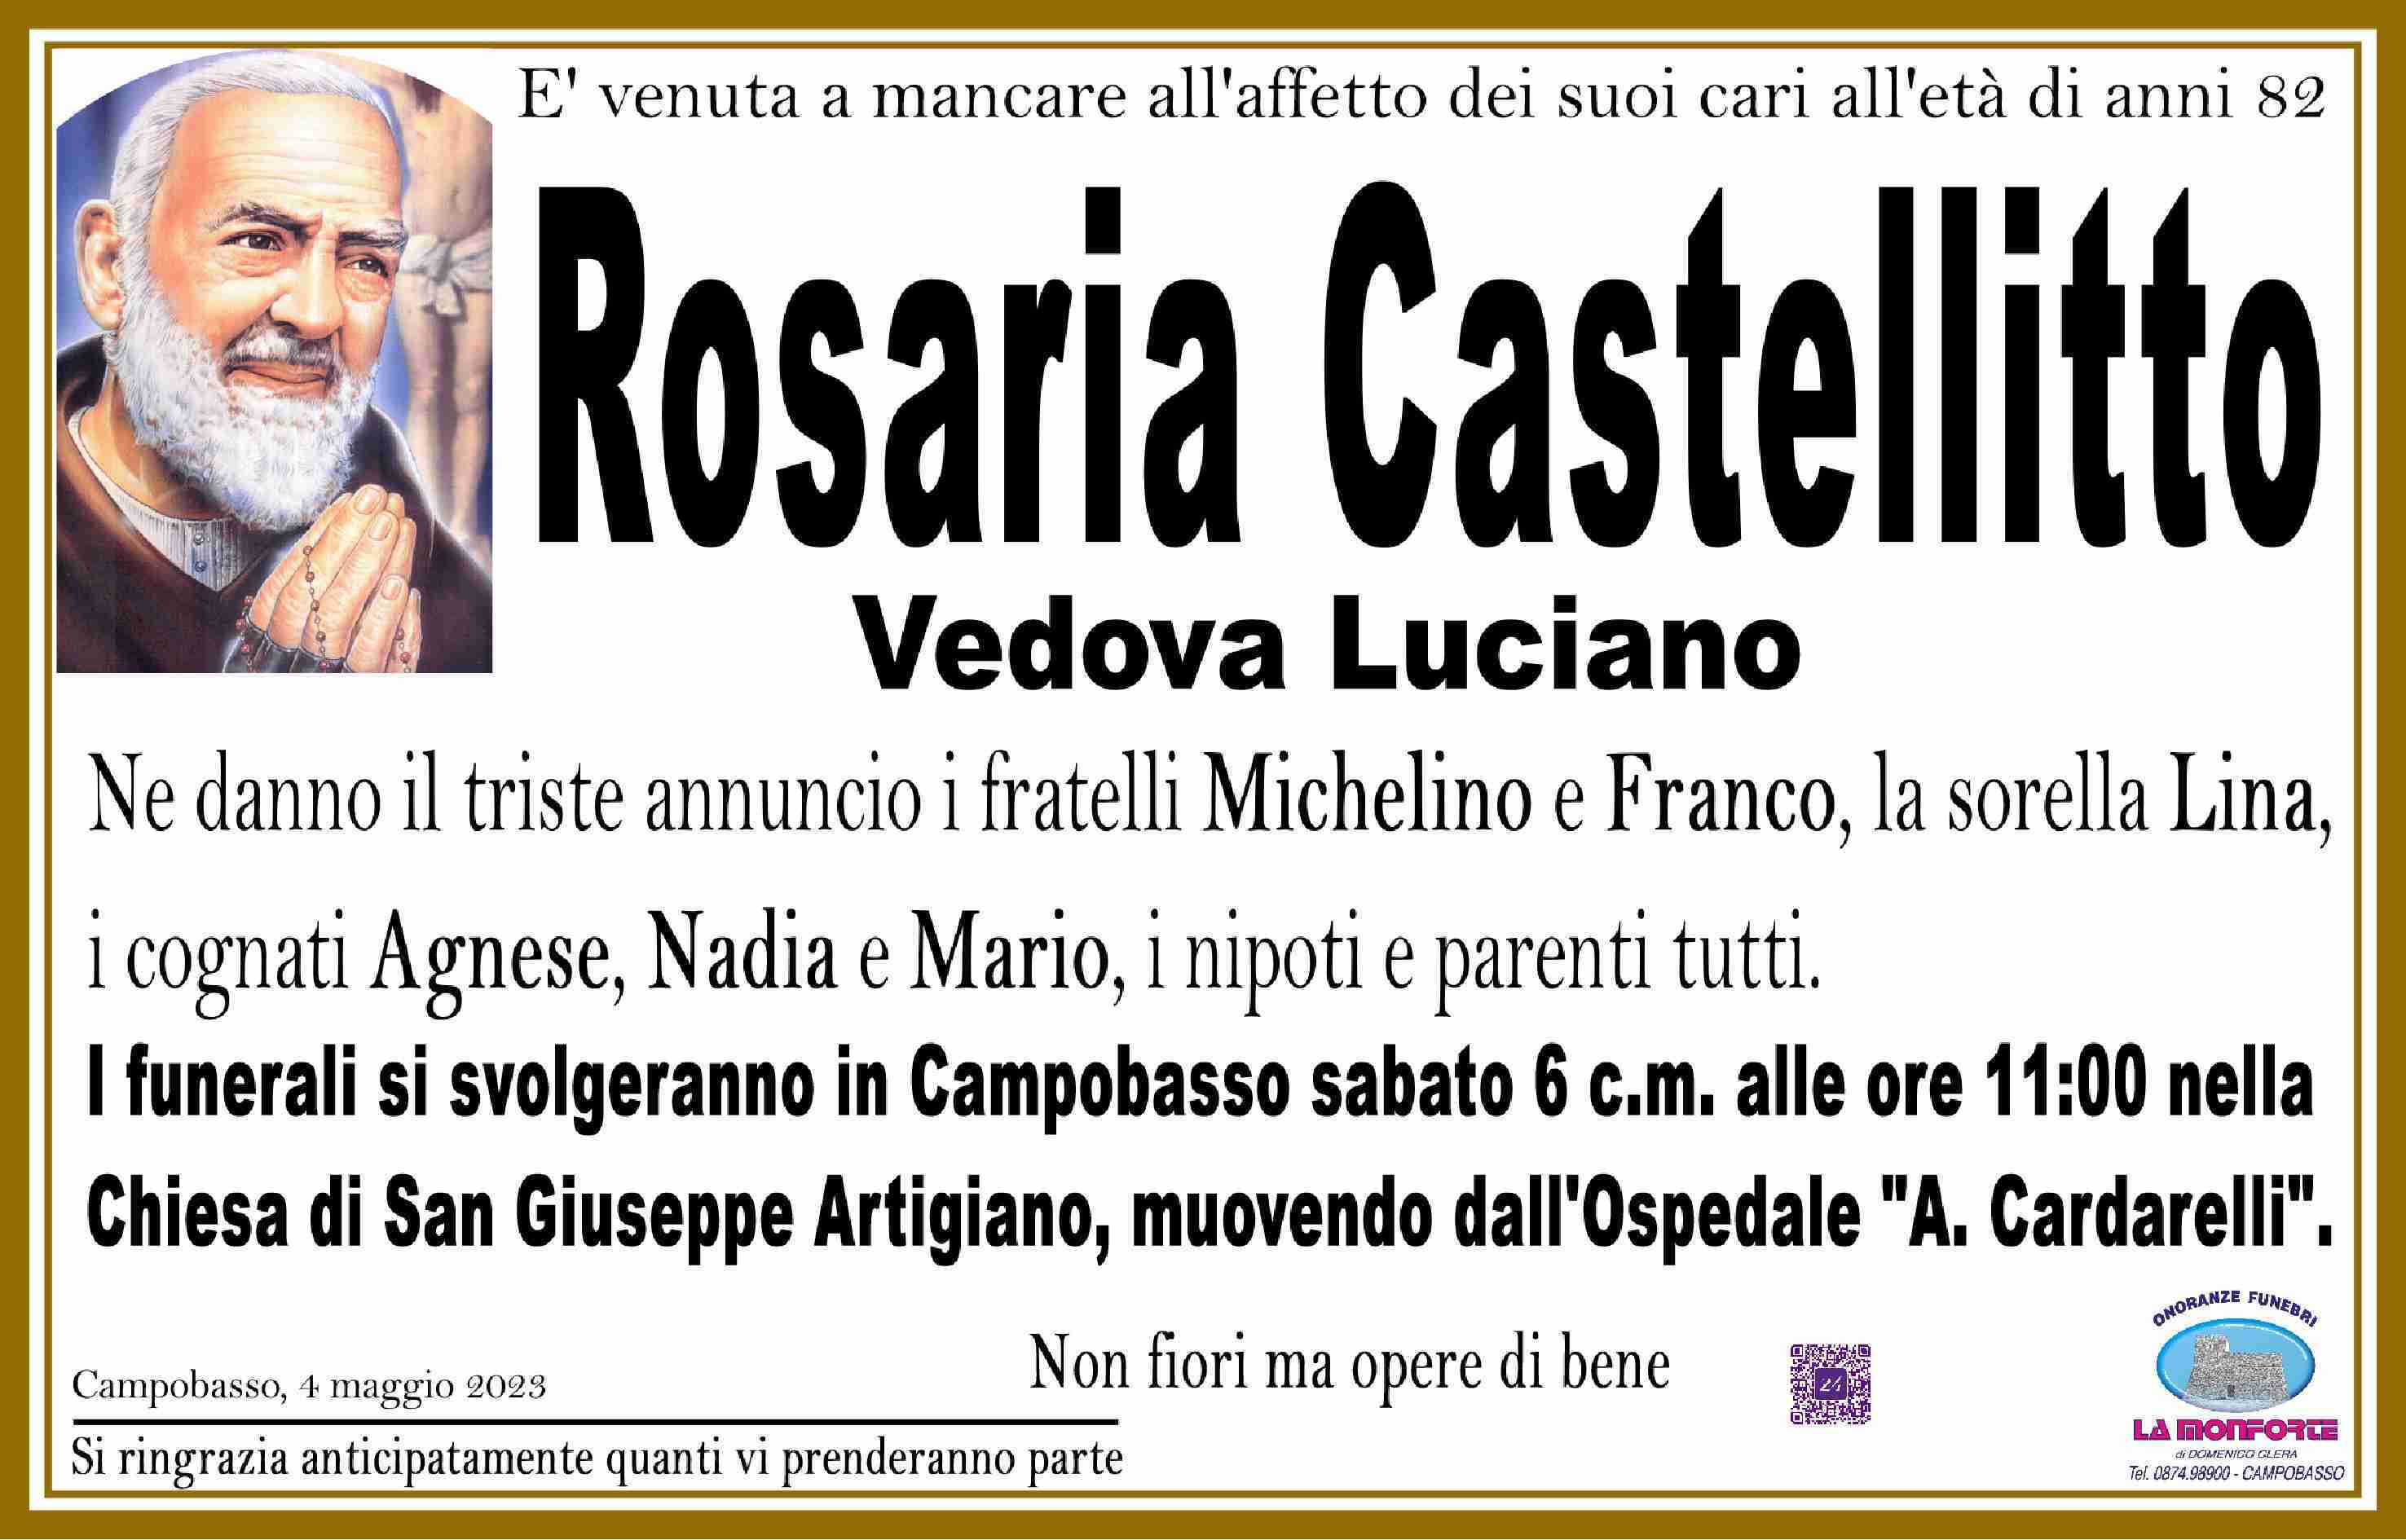 Rosaria Castellitto